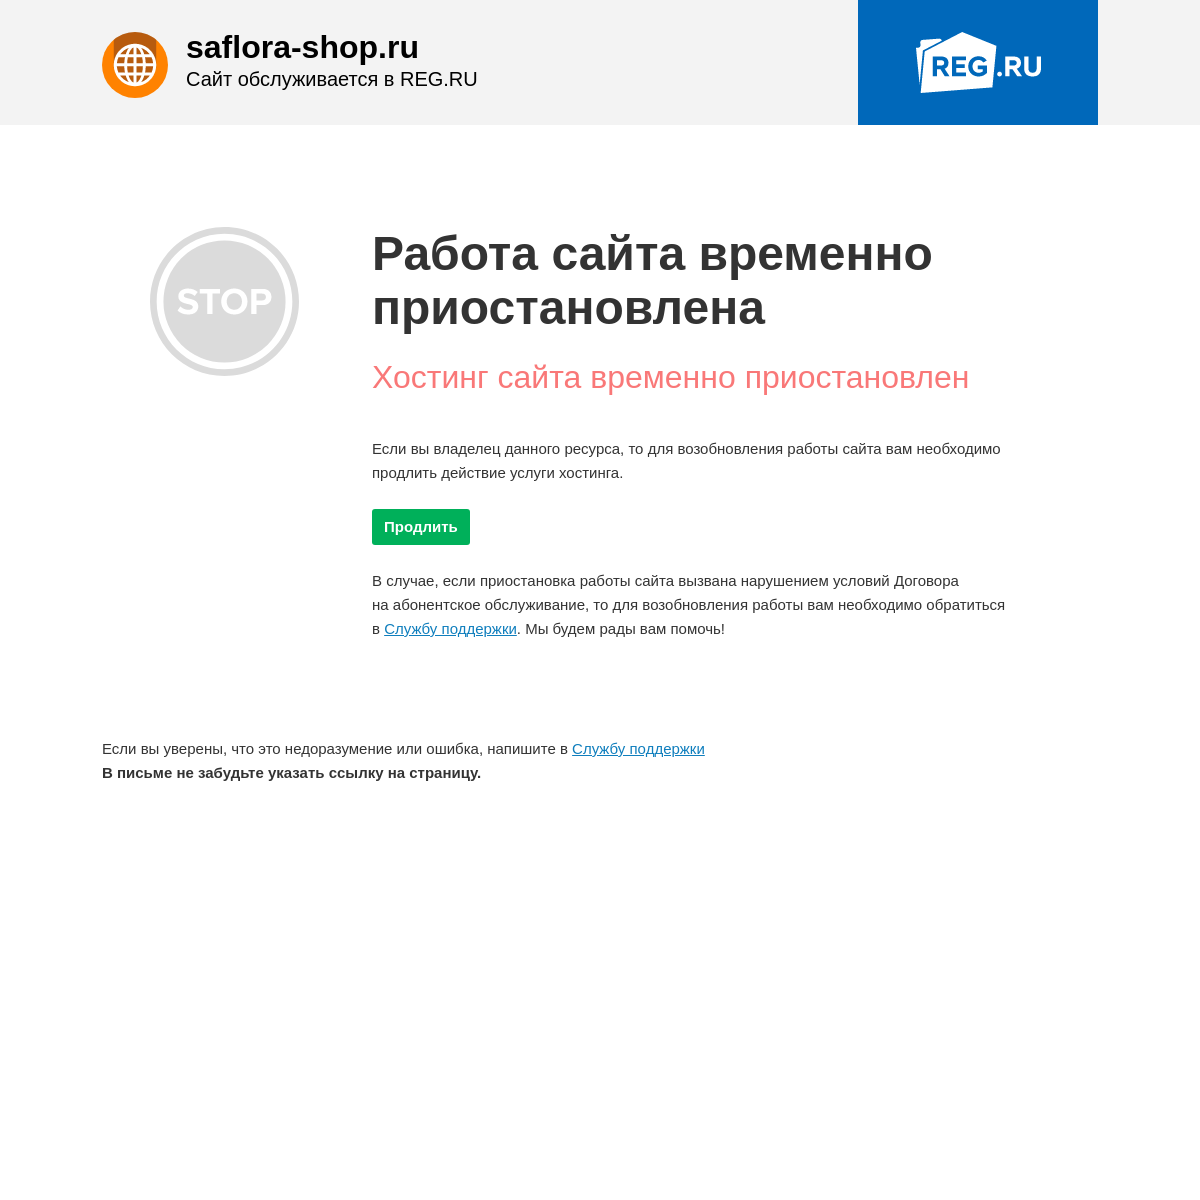 A complete backup of saflora-shop.ru